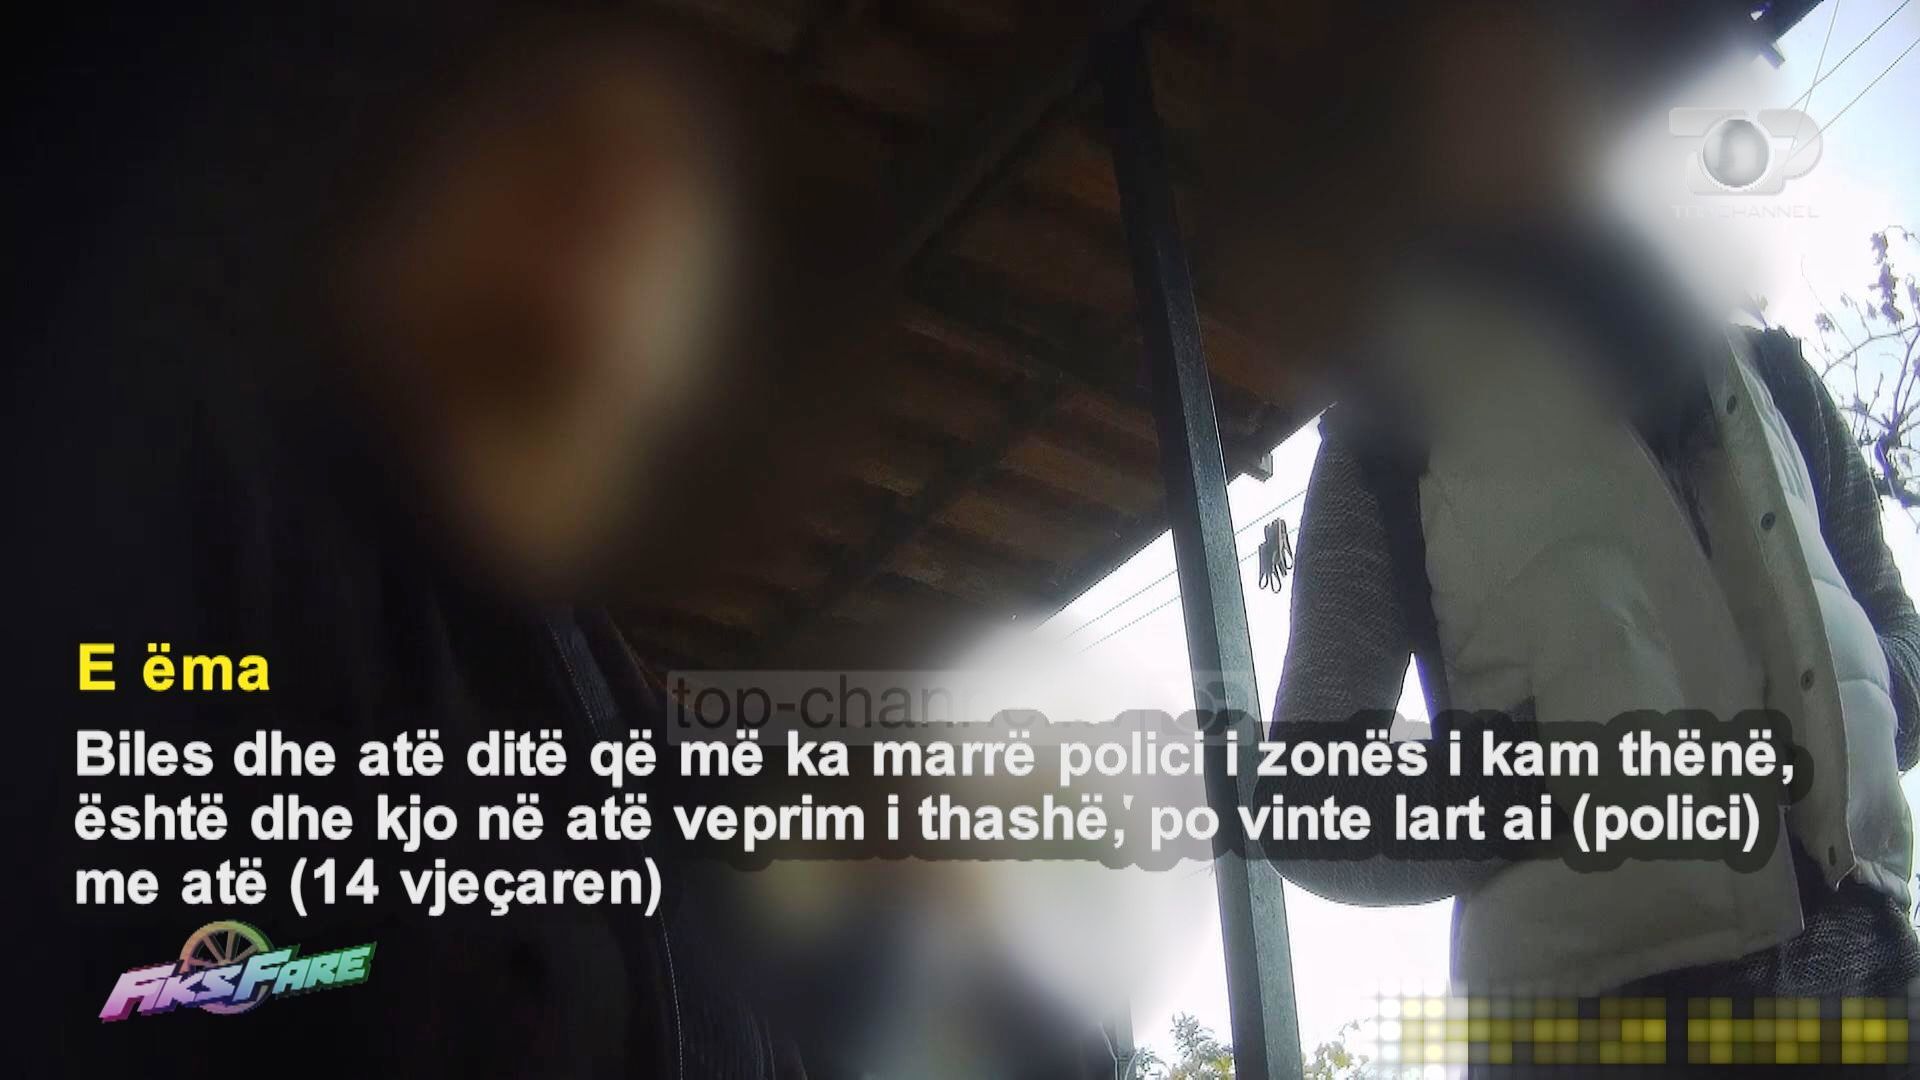 Përveç 13 vjeçares në Sarandë shfrytëzohej për prostitucion edhe shoqja e saj e mitur